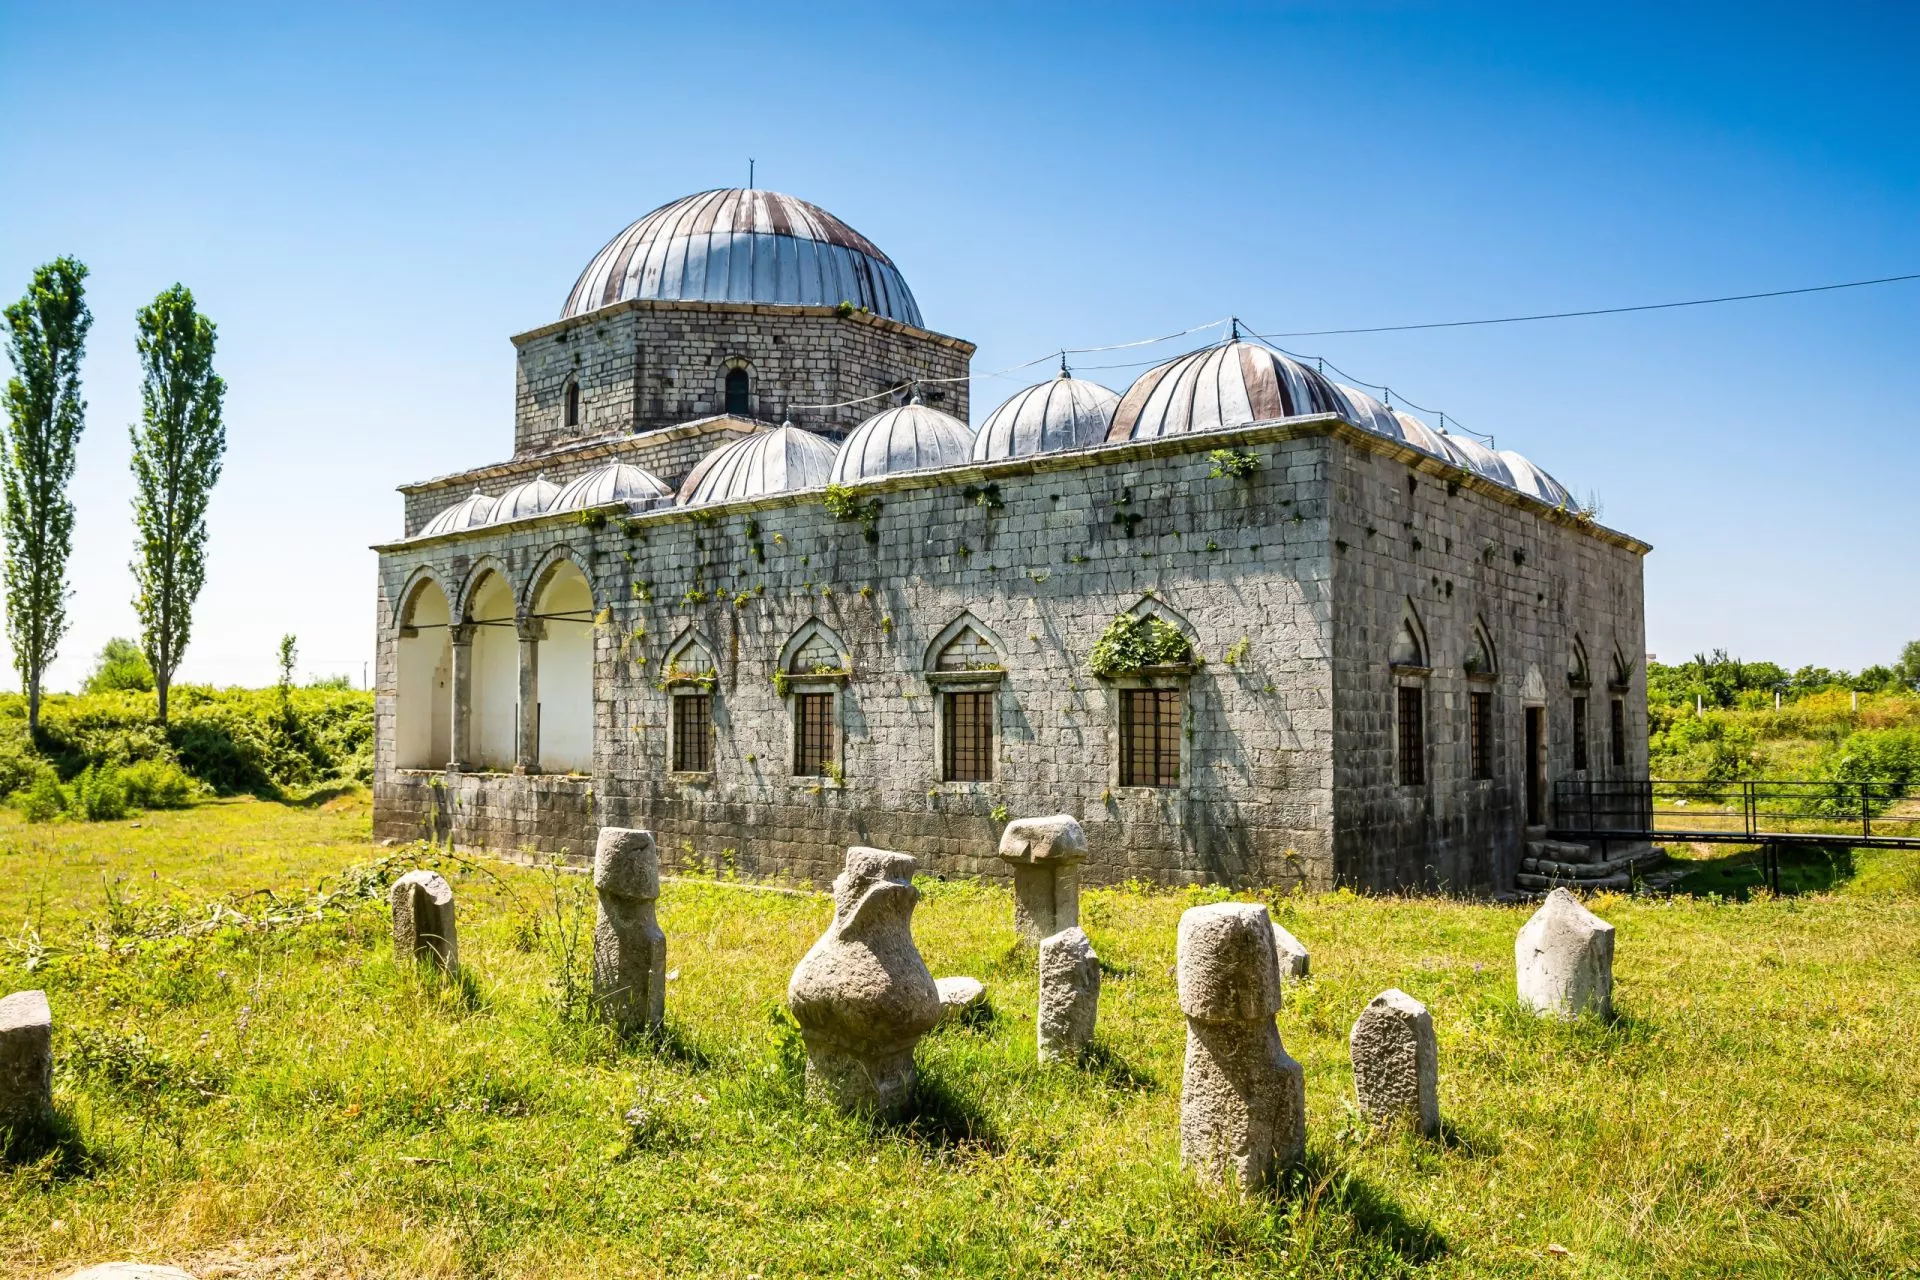 La mosquée Lead, également connue sous le nom de mosquée Busatli Mehmet Pasha, est une mosquée historique située à Shkoder.